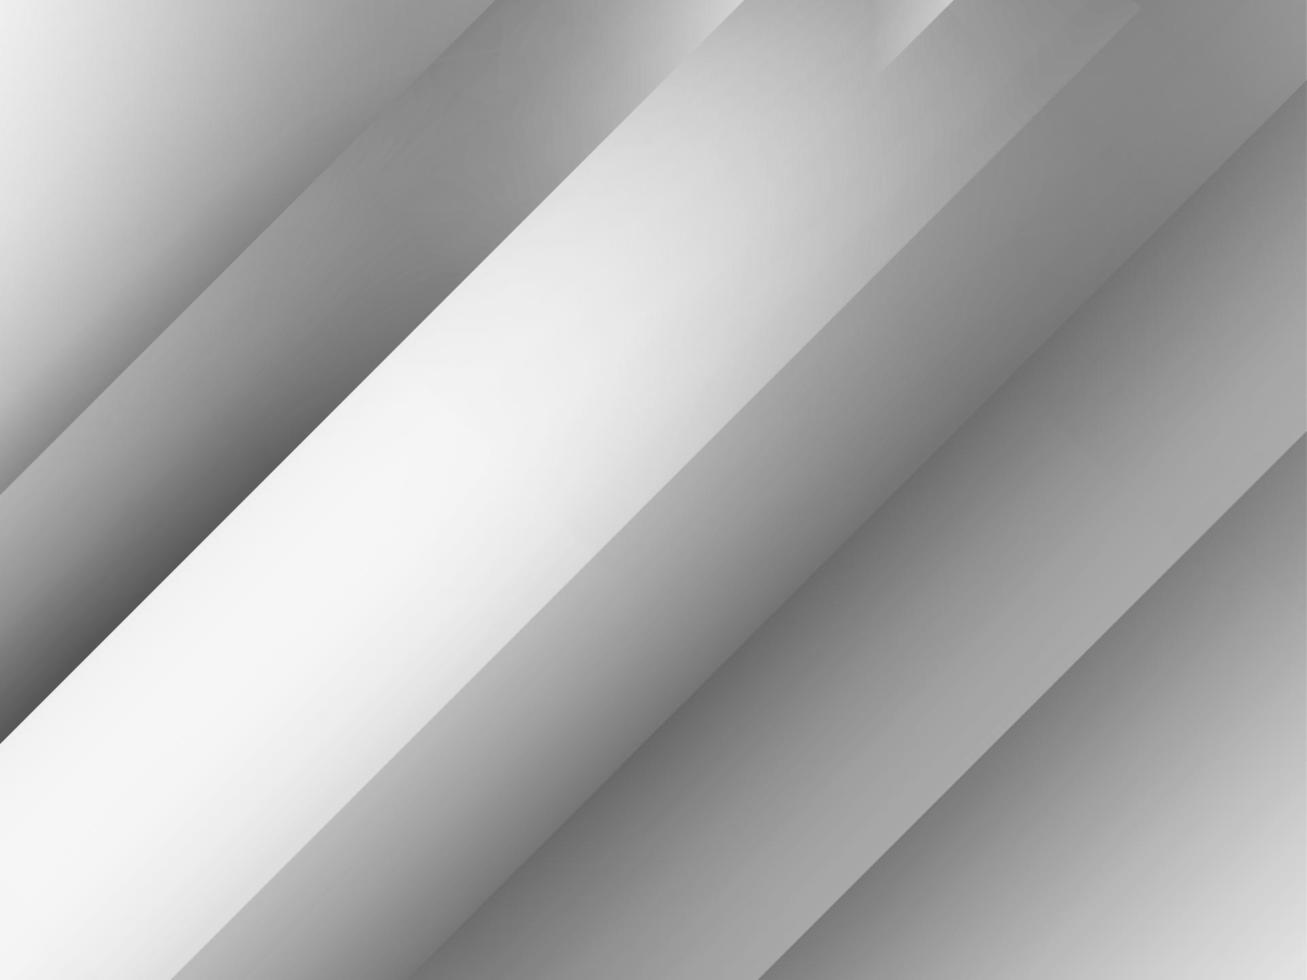 abstrakt grå och vit geometrisk snygg modern bakgrundsdesign vektor